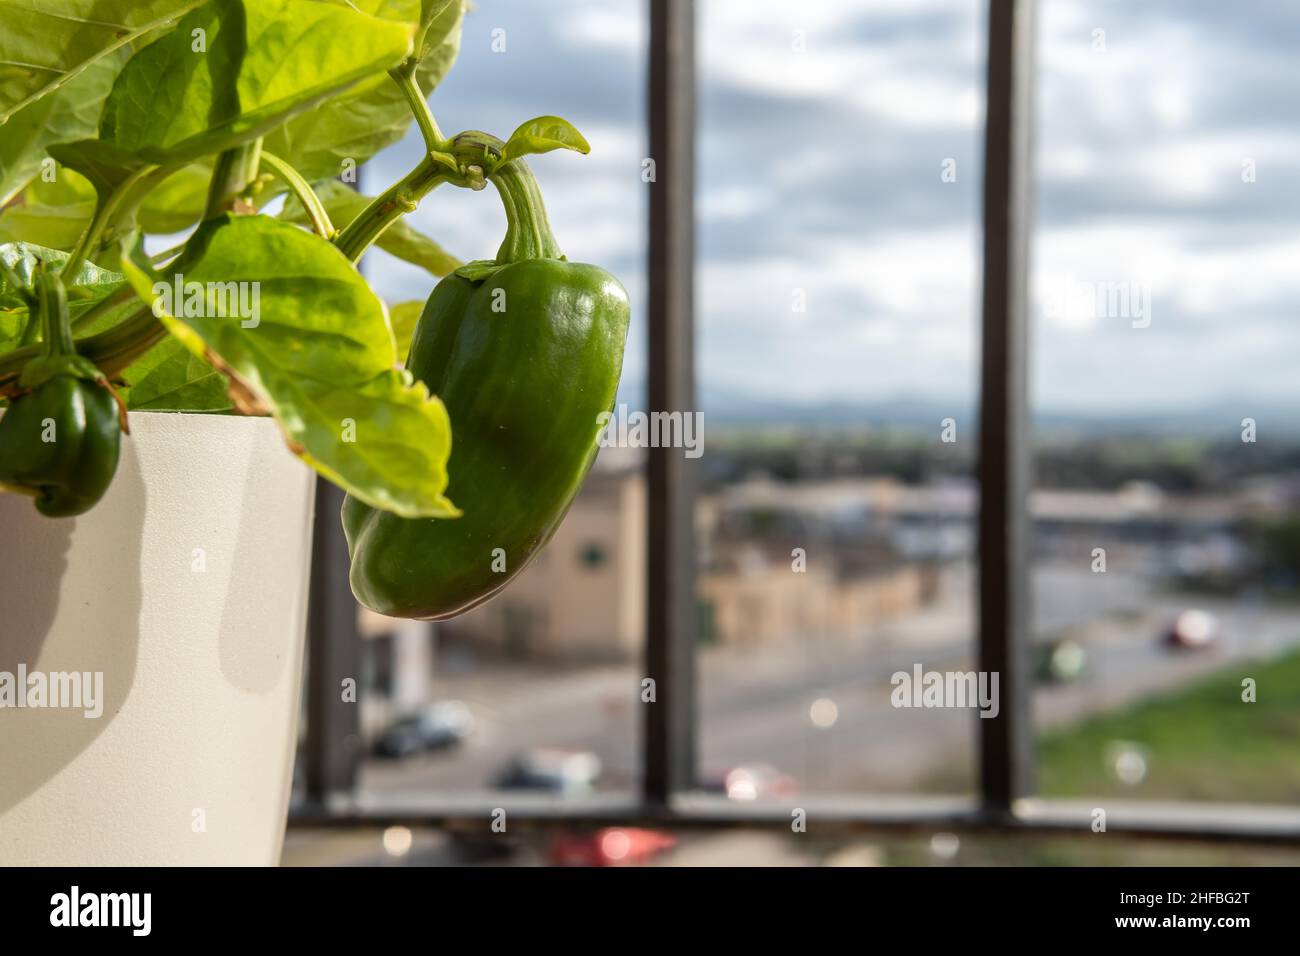 Gros plan d'un poivron vert, papsicum vert, sur une plante de poivron, dans un cadre urbain.Image conceptuelle des jardins urbains Banque D'Images